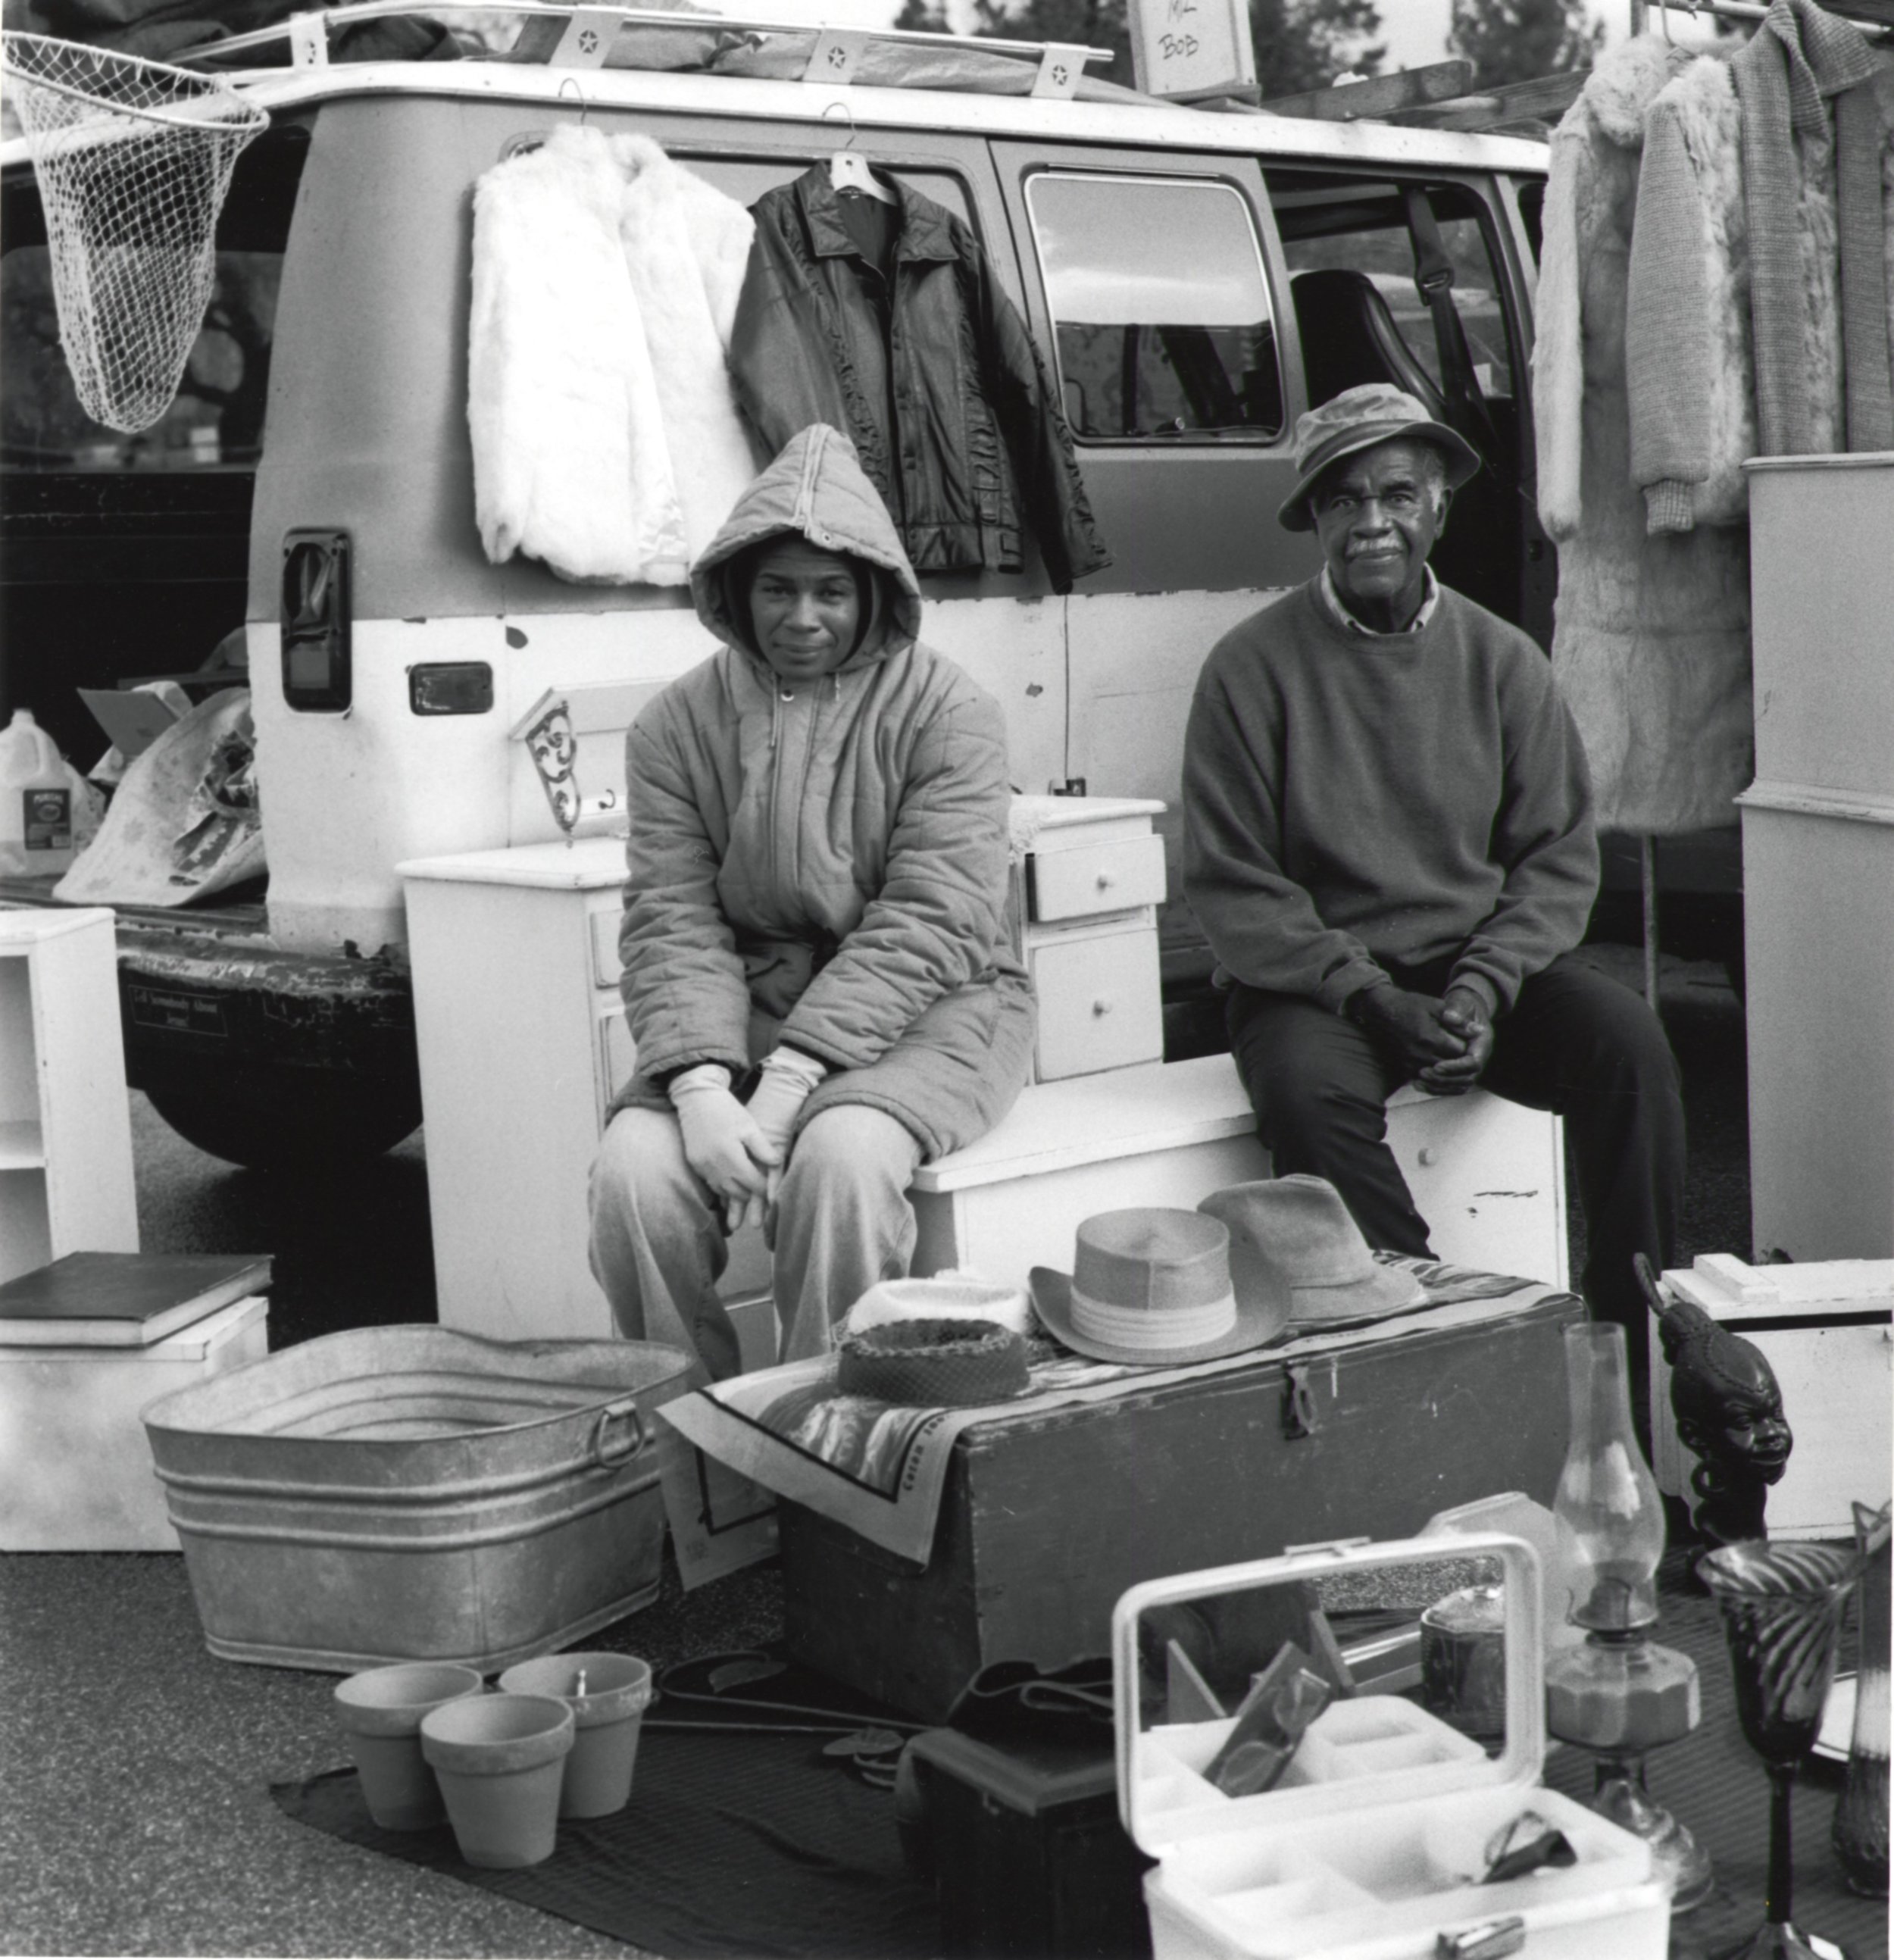 Vendors - Pasadena CA 1995